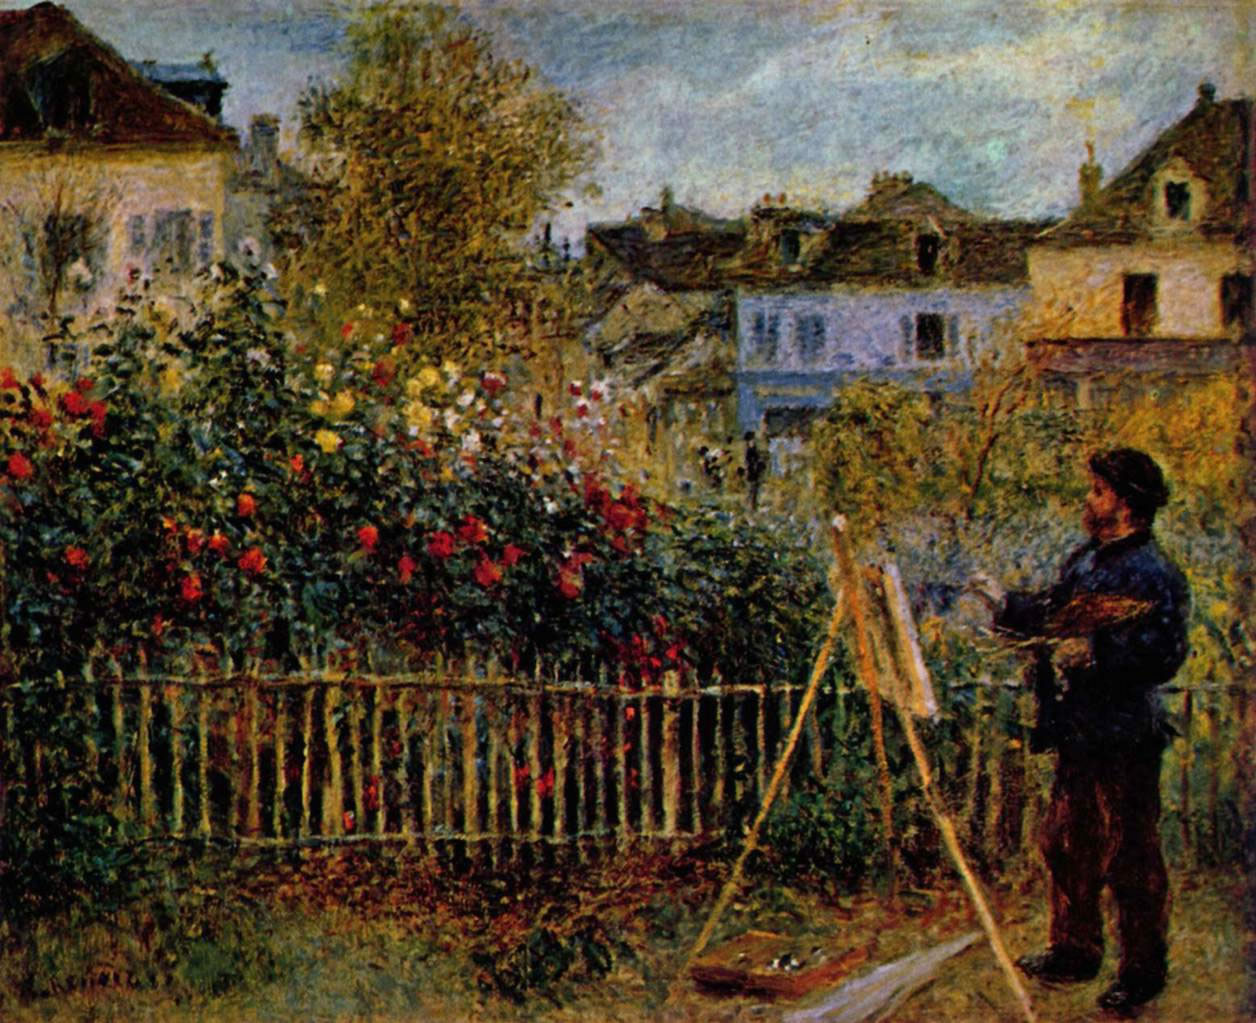 Auguste Renoir - Monet painting in his garden